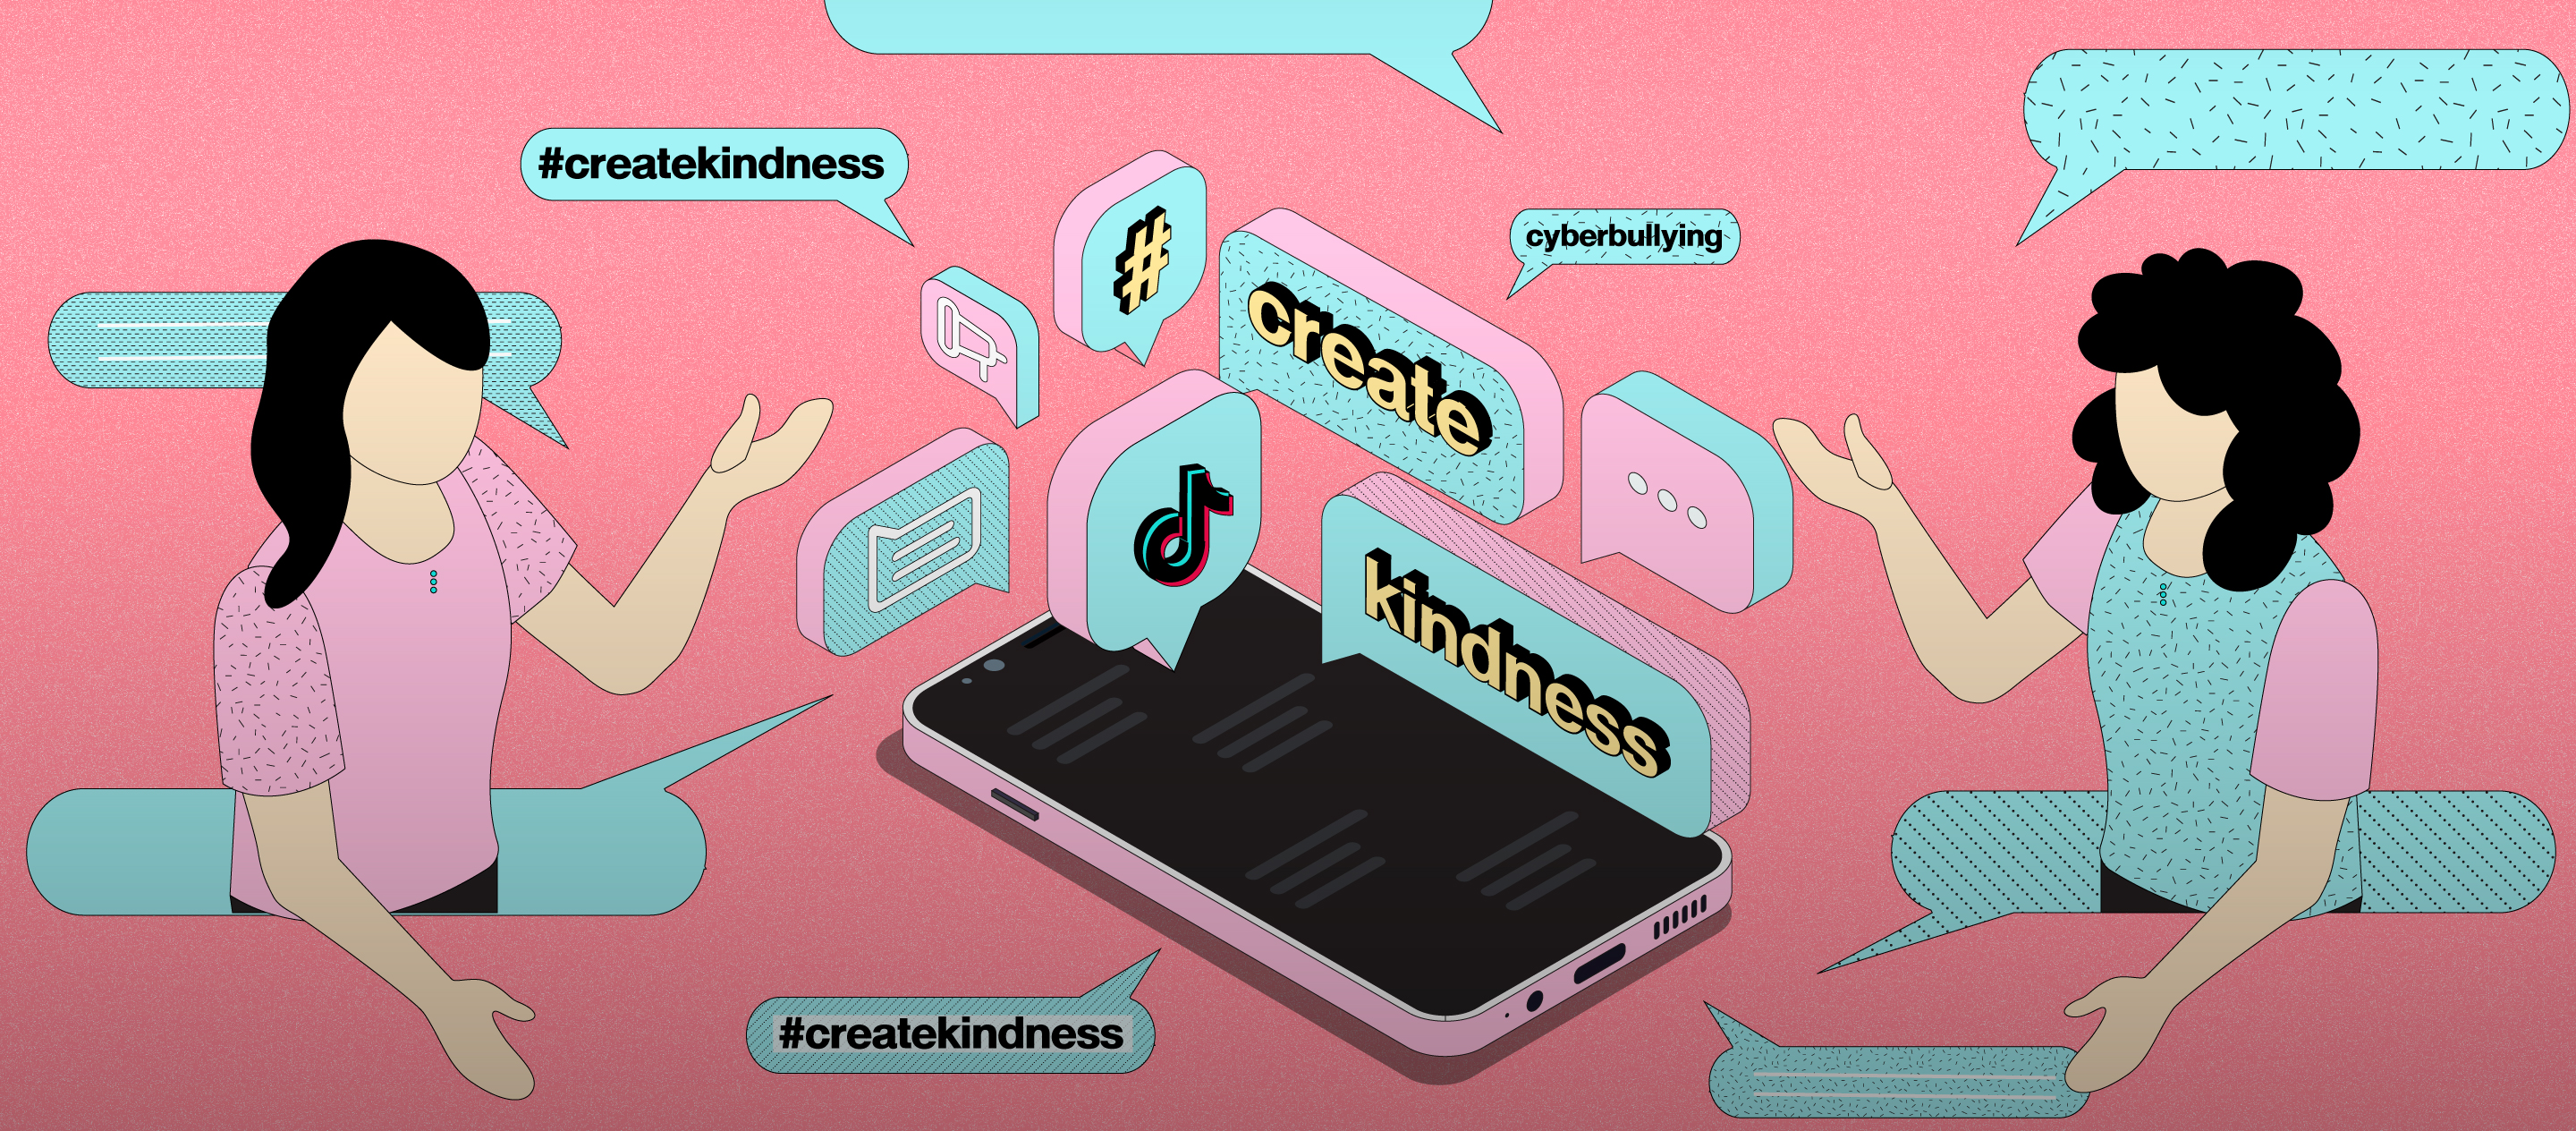 ส่งต่อพลังบวกเพื่อสร้างชุมชนออนไลน์ที่ปลอดภัยกับ TikTok ในแคมเปญ #CreateKindness